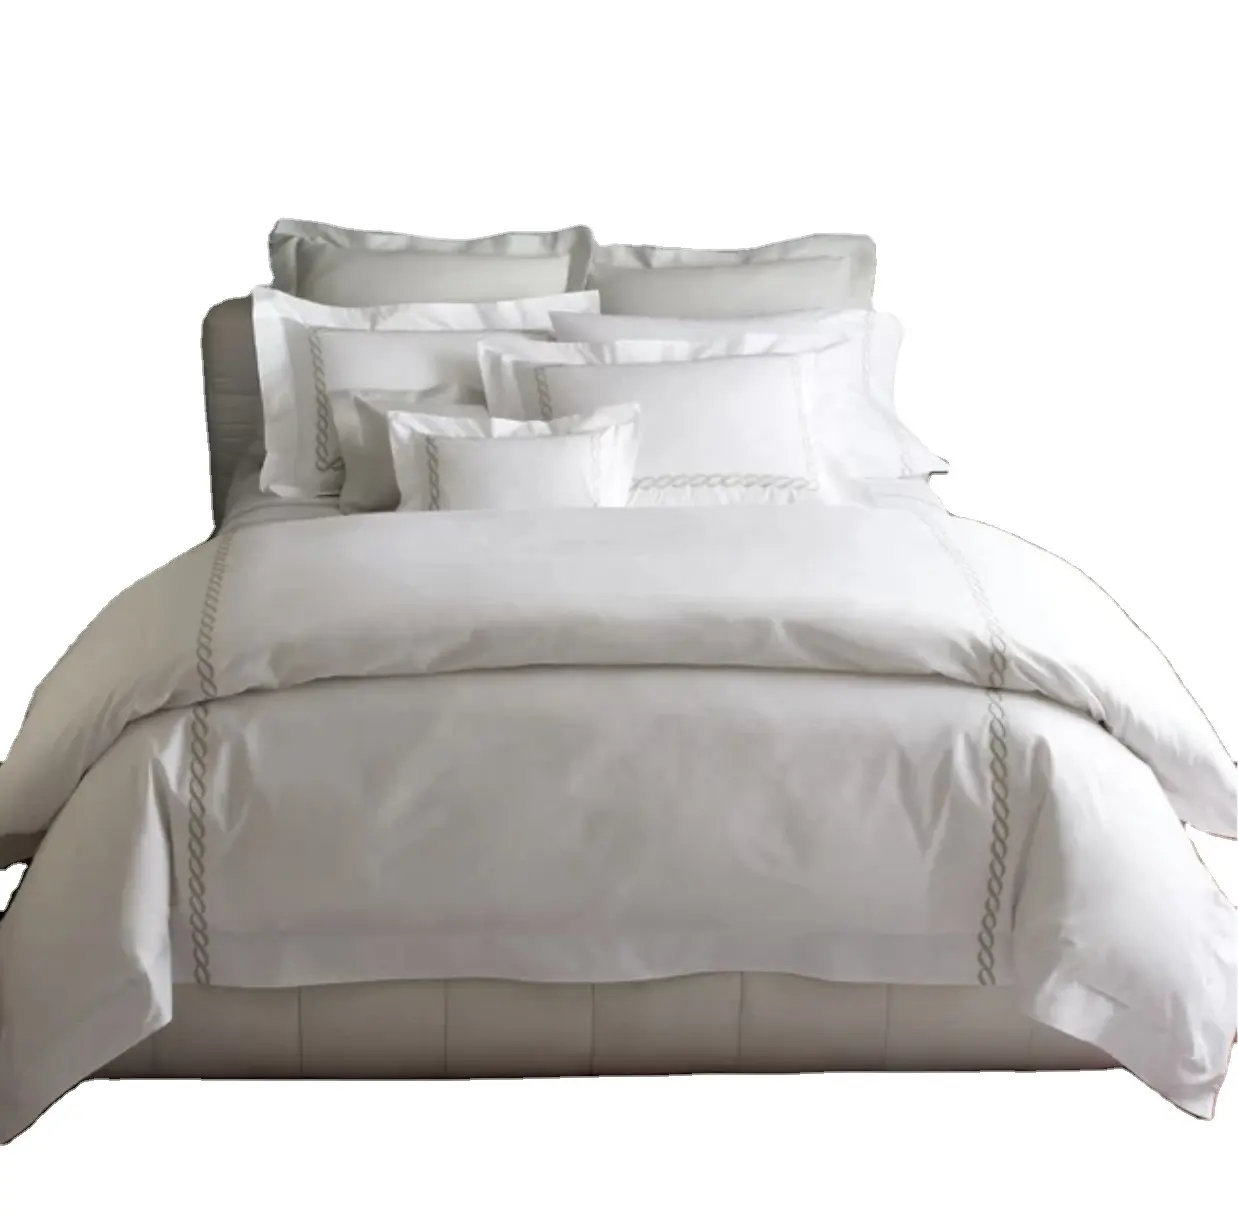 ขนาดที่กําหนดเอง 200tc-1000tc โรงแรมระดับ 5 ดาวผ้าปูที่นอน 4 ชิ้นชุดเครื่องนอนปักผ้าฝ้าย 100% สีขาวโรงแรมผ้าปูที่นอนผ้านวมคลุมเตียง